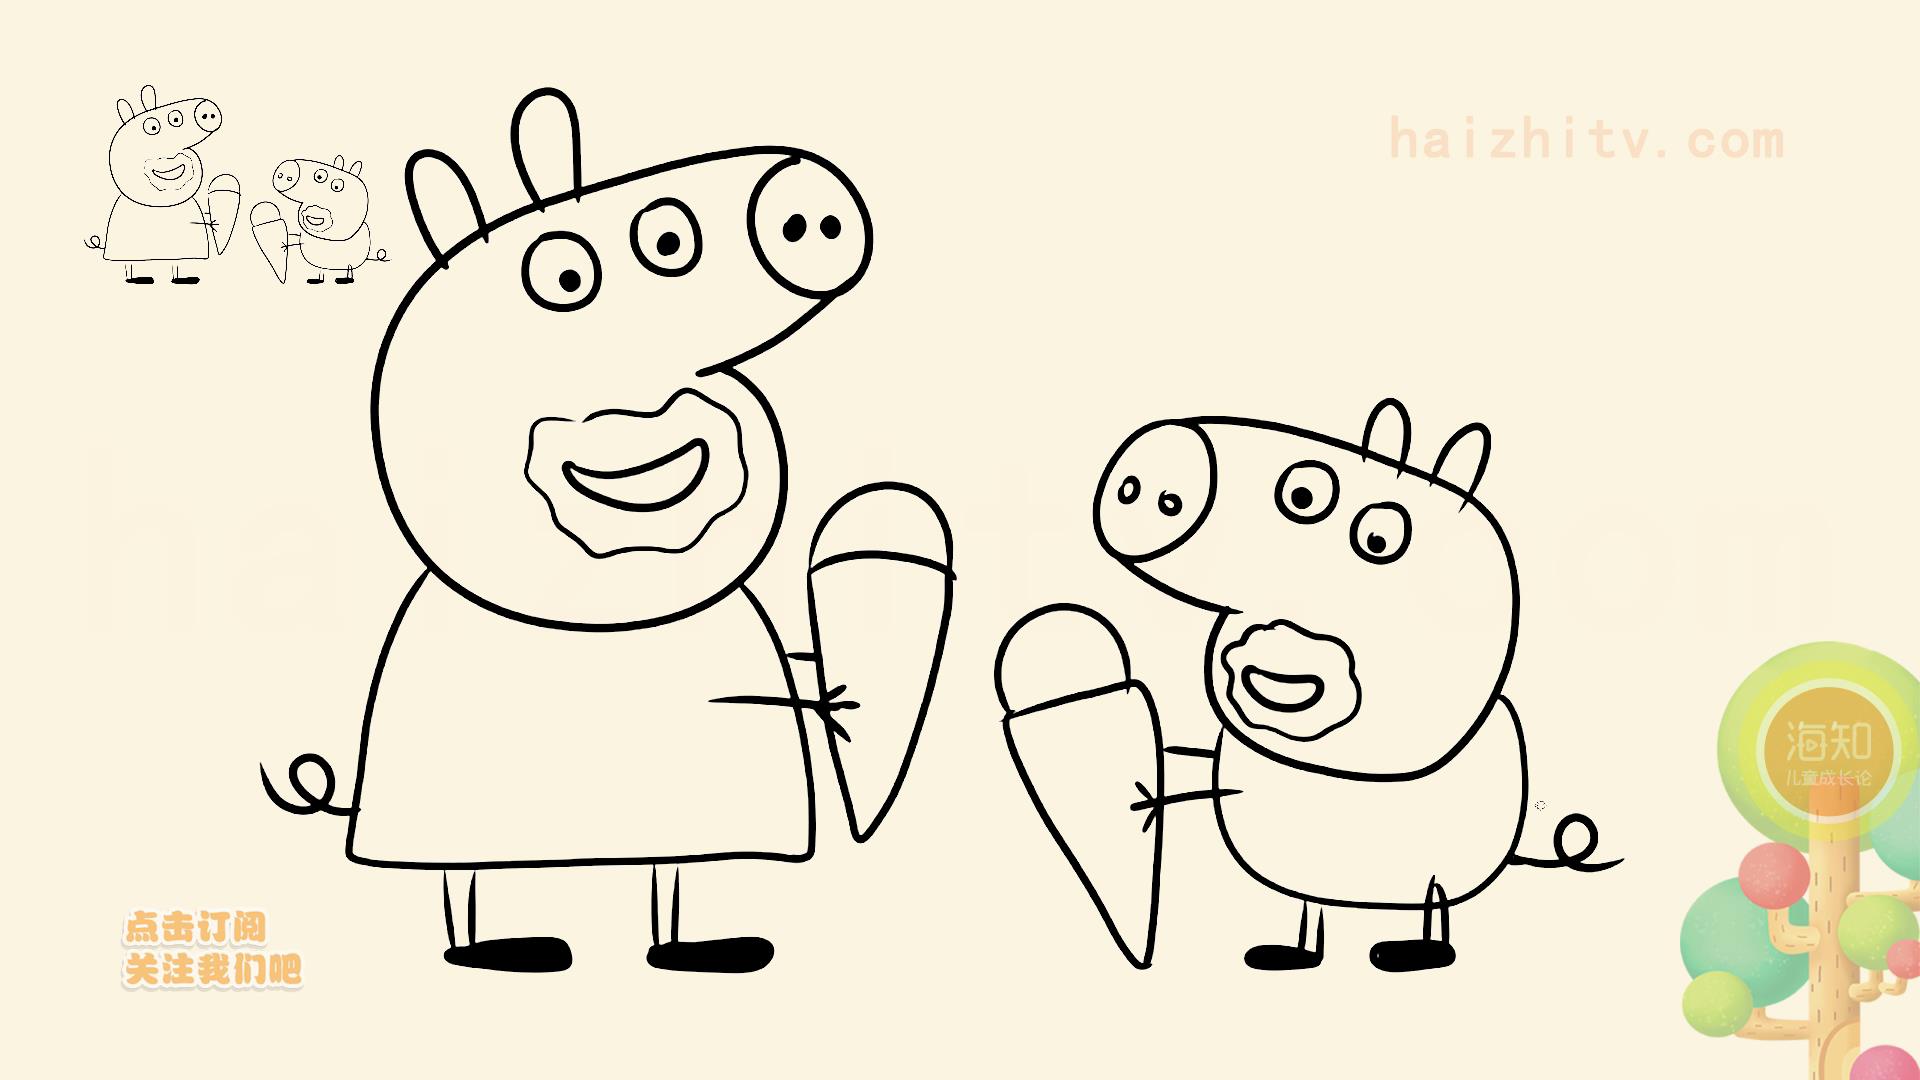 小猪佩奇简笔画,幼儿园小朋友有必备!